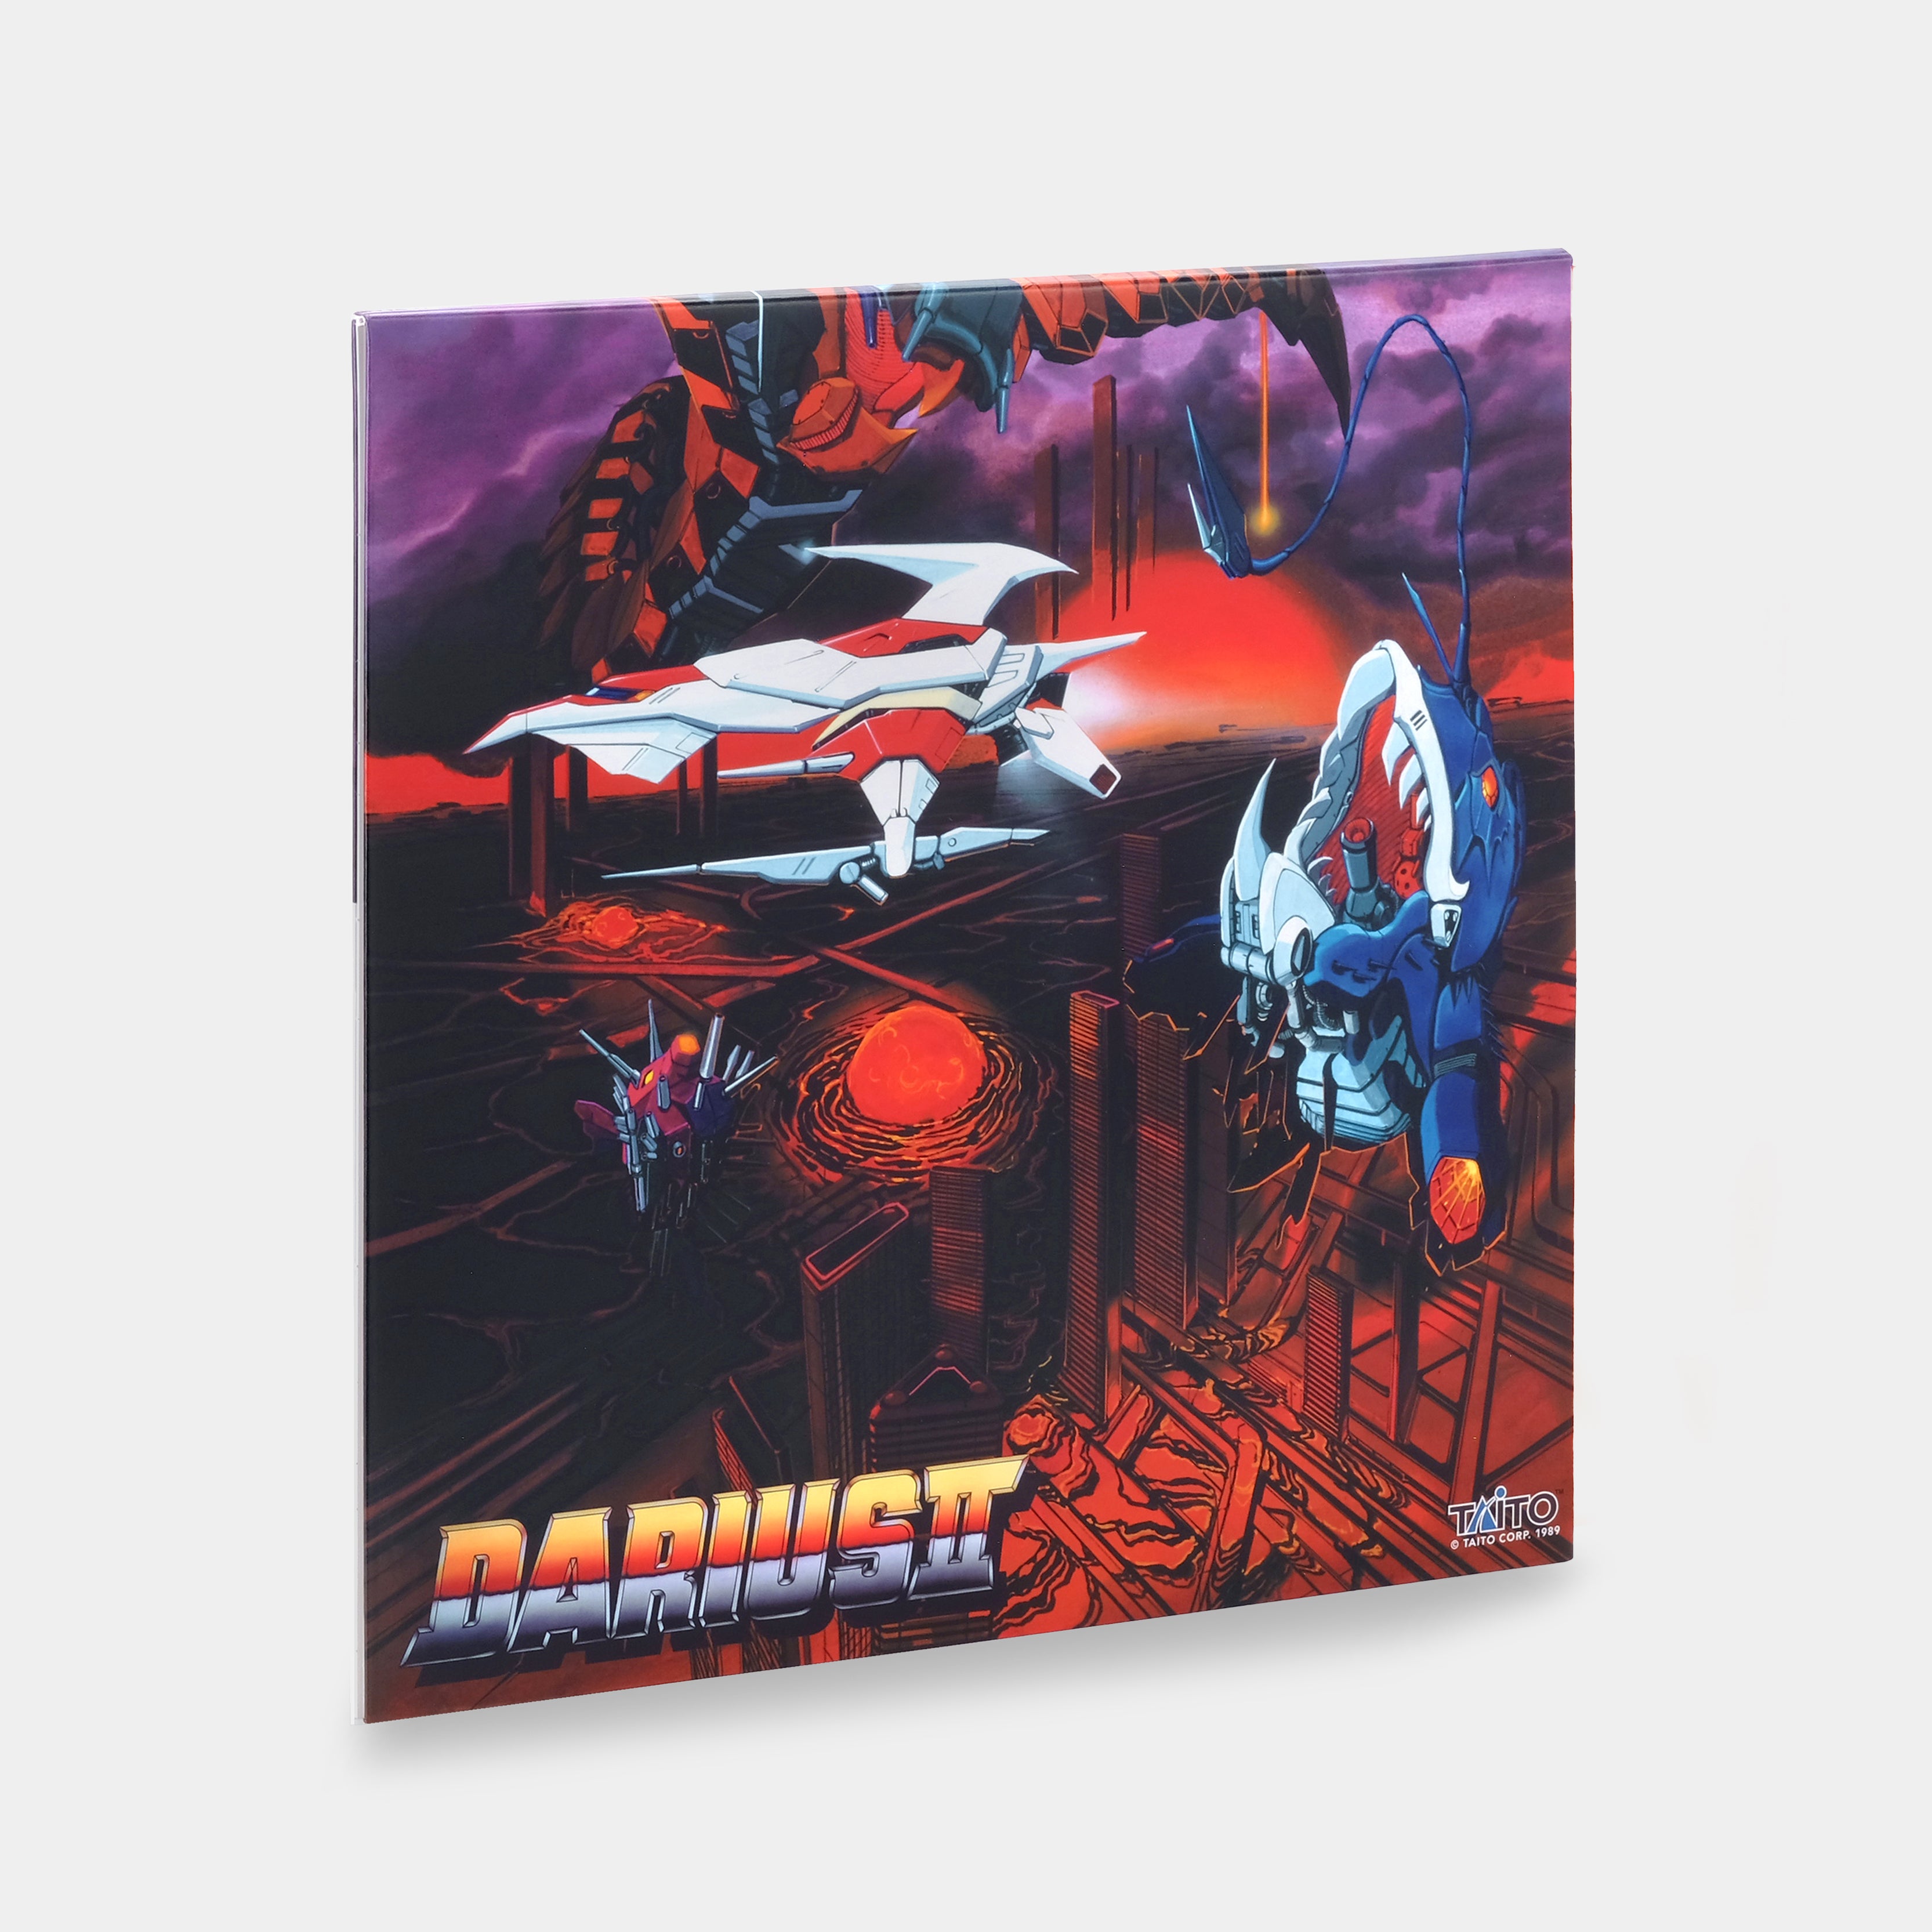 Zuntata - Darius II (Original Video Game Soundtrack) LP Red Starburst Vinyl Record